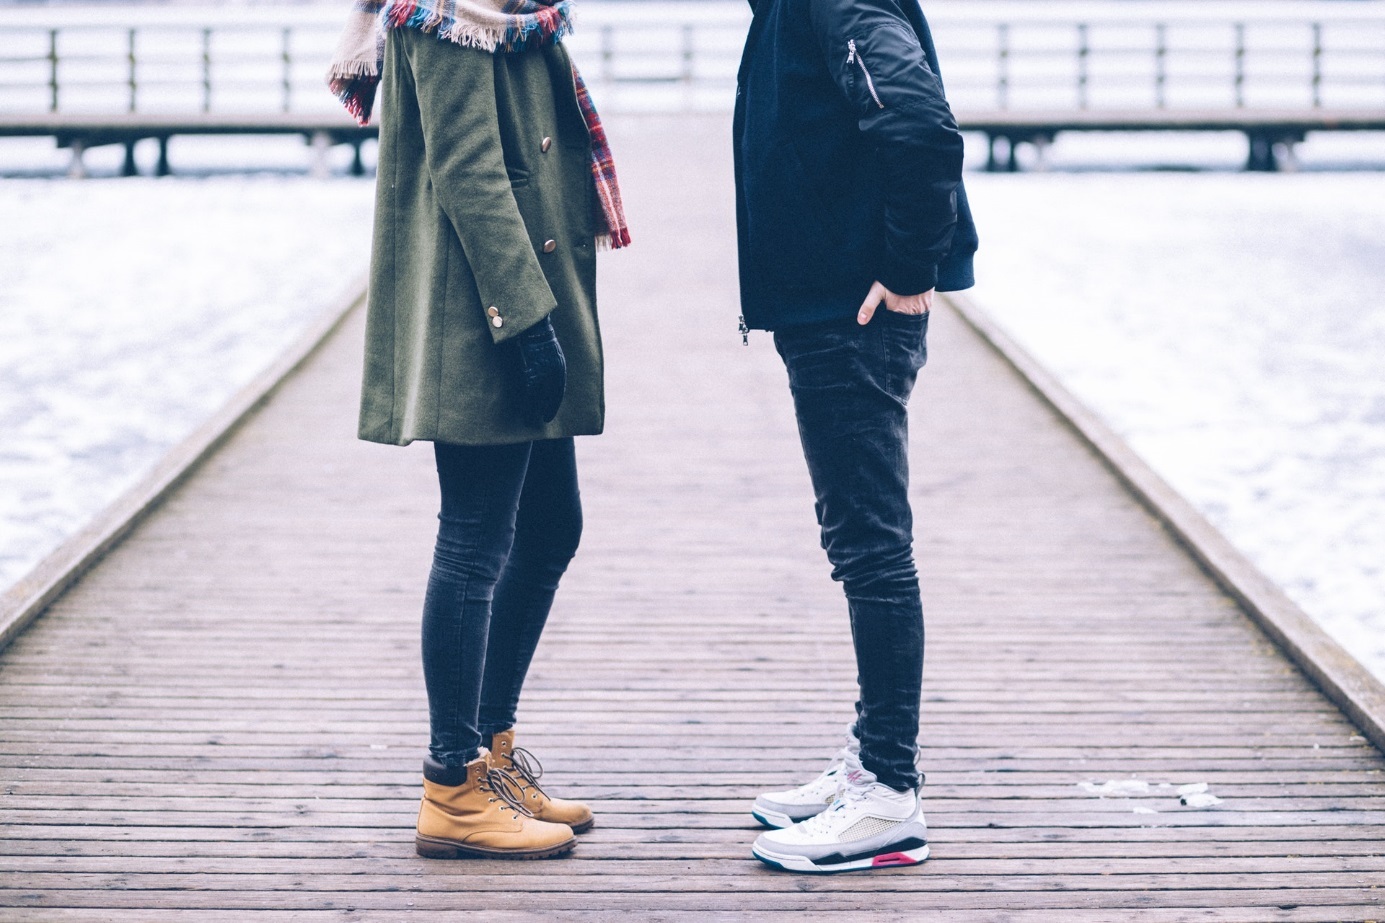 Frau und Mann auf Seebrücke in winterlicher Umgebung